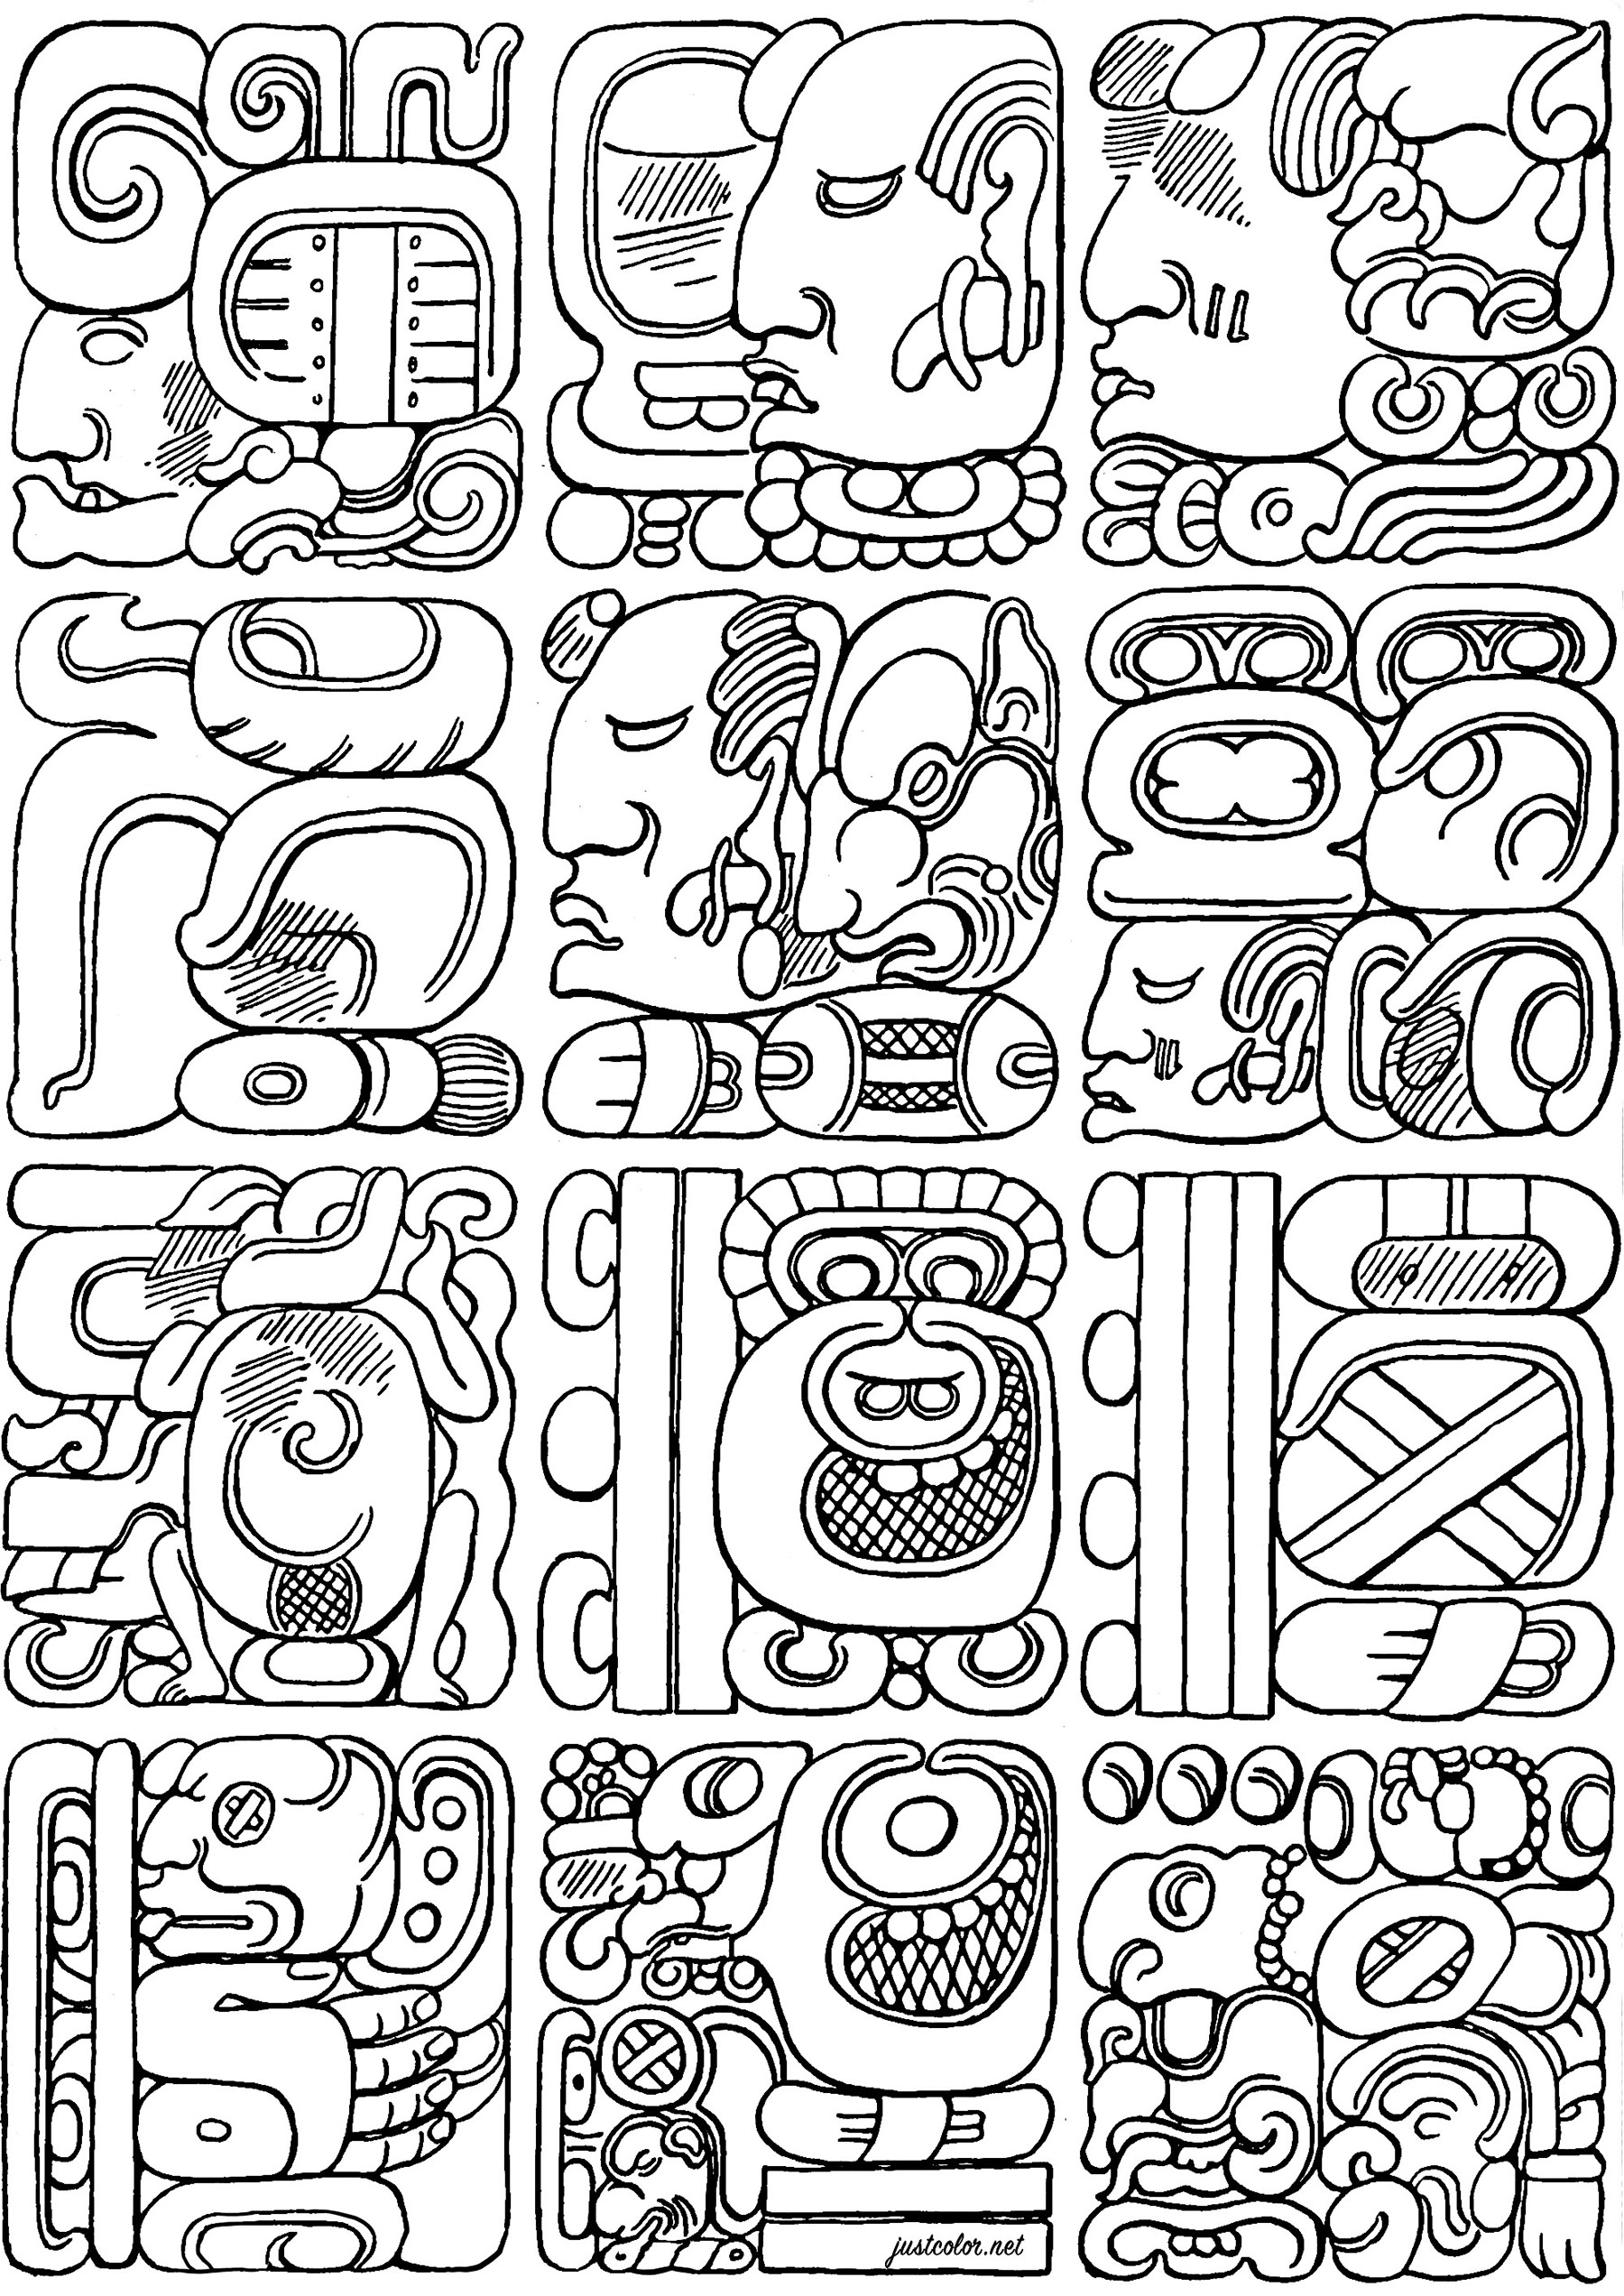 Coloração criada a partir de glifos maias autênticos. Os glifos maias são um dos poucos sistemas de escrita completamente desenvolvidos nas Américas pré-colombianas, permitindo que as línguas maias sejam transcritas com uma precisão quase perfeita.Através das suas complexas inscrições glíficas, os Maias registaram acontecimentos históricos, mitos, matemáticas e observações astronómicas que continuam a fascinar os investigadores de hoje.